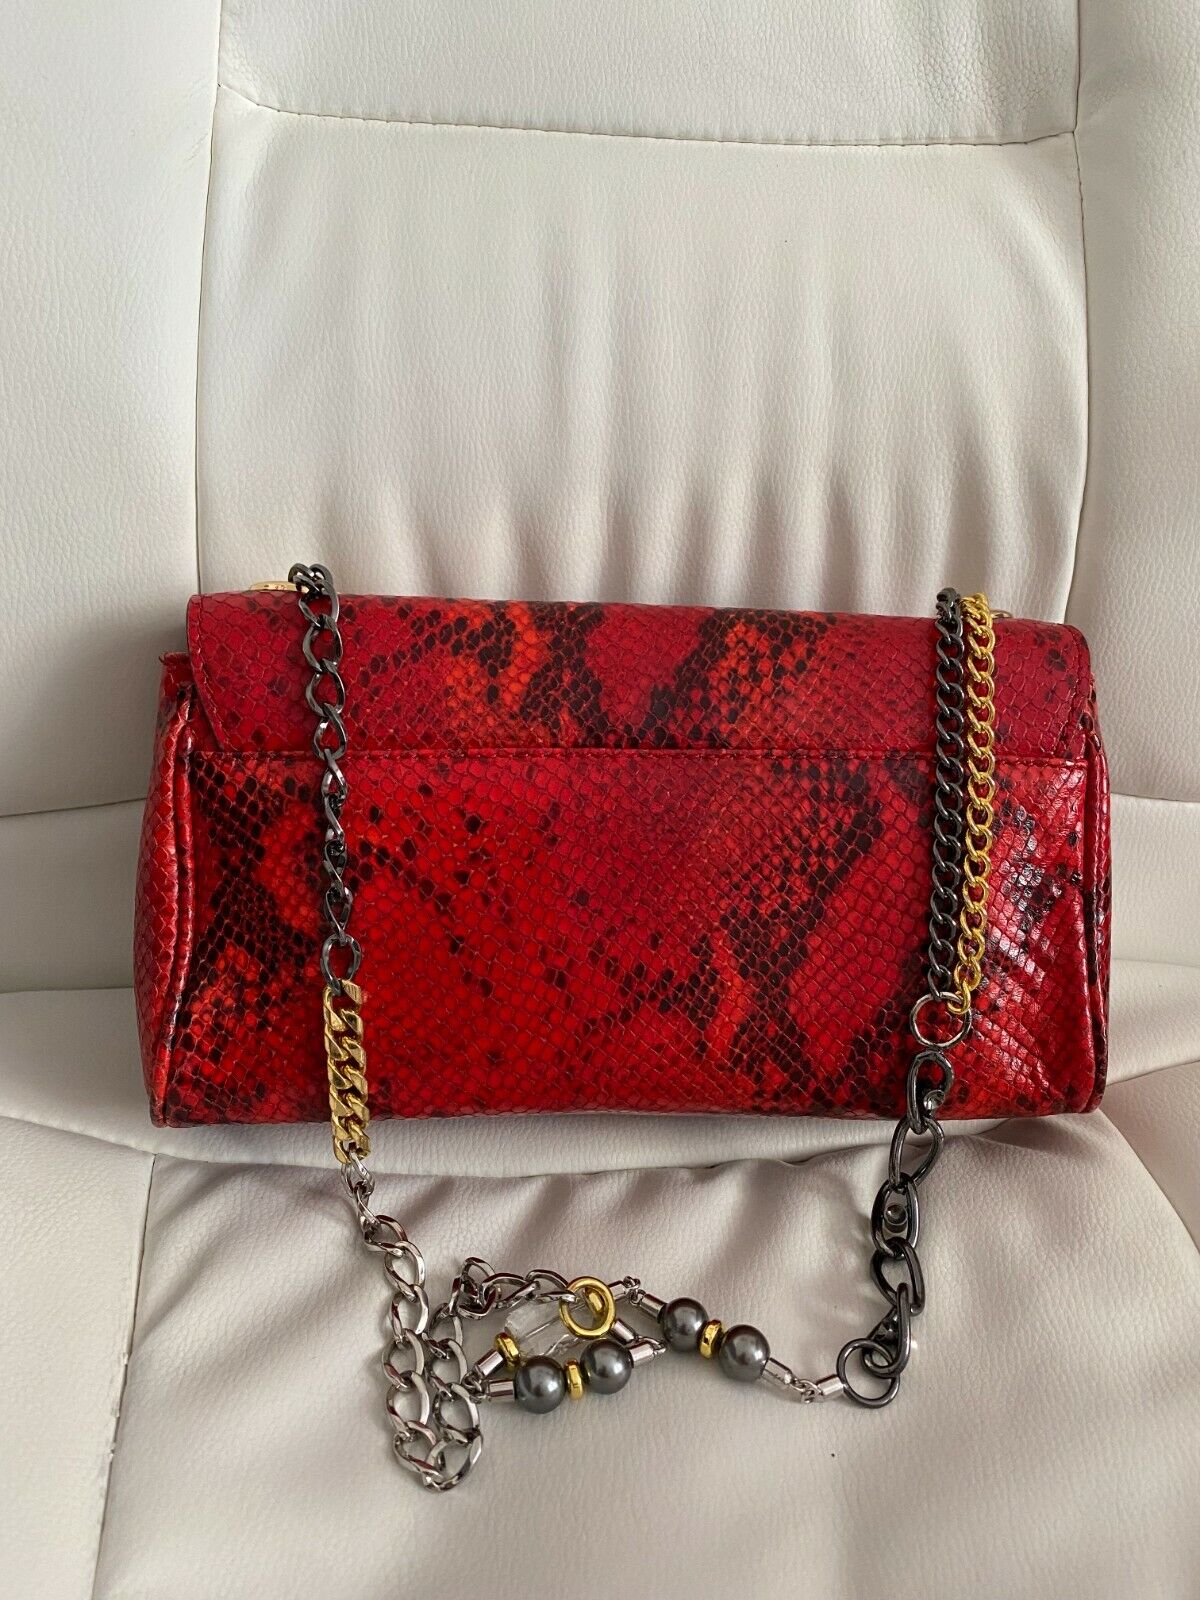 Dolce & Gabbana D&G Miss Charles Red Leather Bag Shoulder Chain Baguette  Handbag